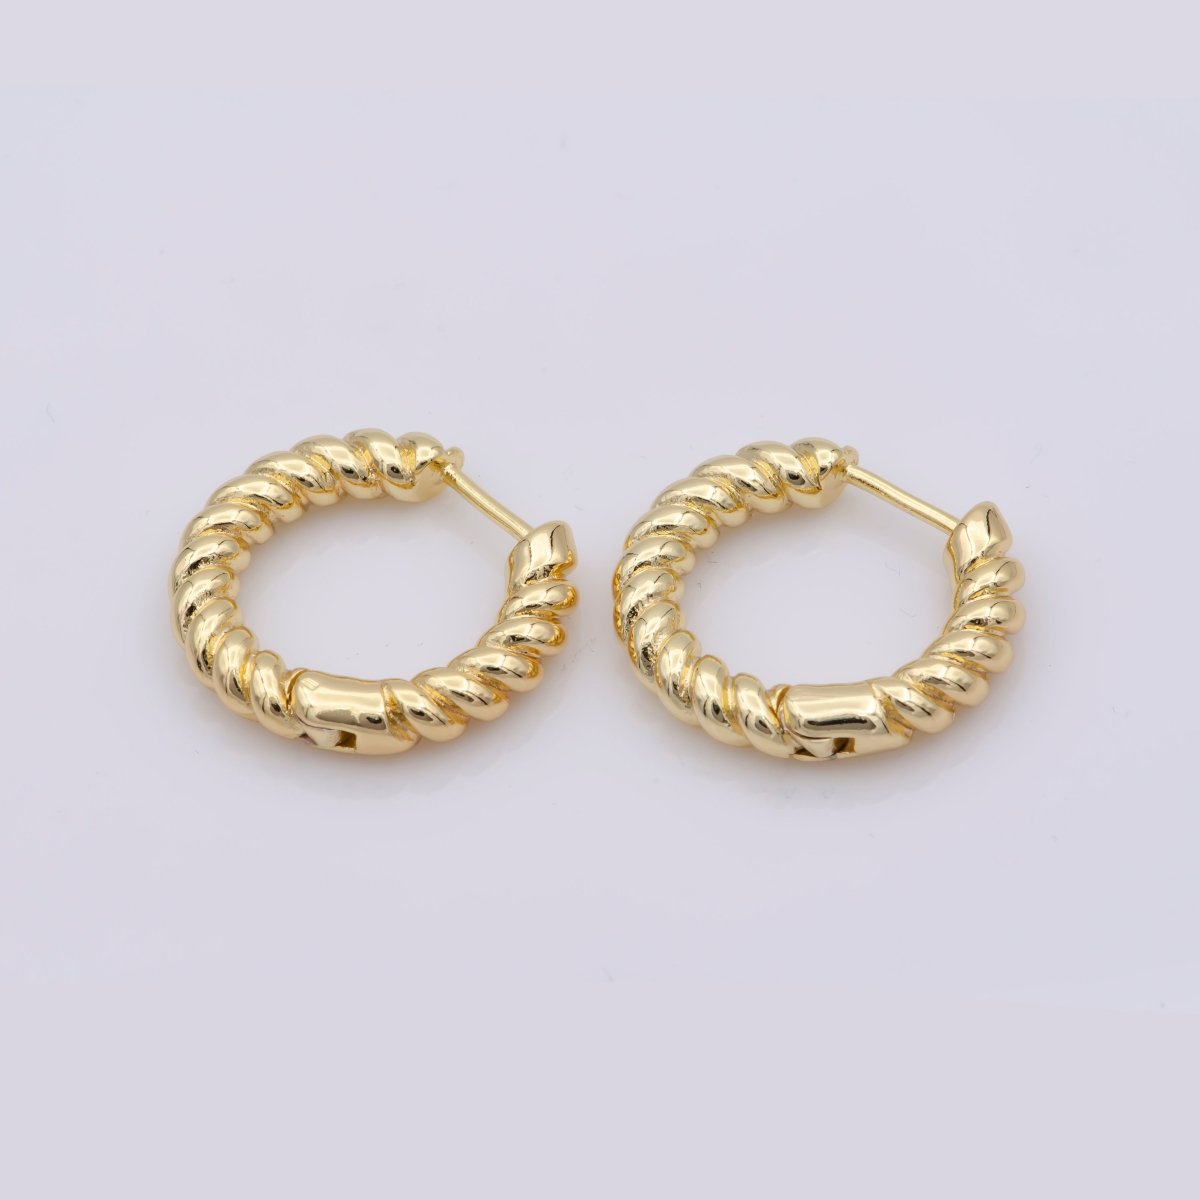 Croissant Earring - Chunky Twist Hoop Earring Gold - 14K Gold Fill Hoop - Oval Gold Hoop - Gold Fill Chunky Hoop - Twisted Earrings - Gift AE-802 - DLUXCA